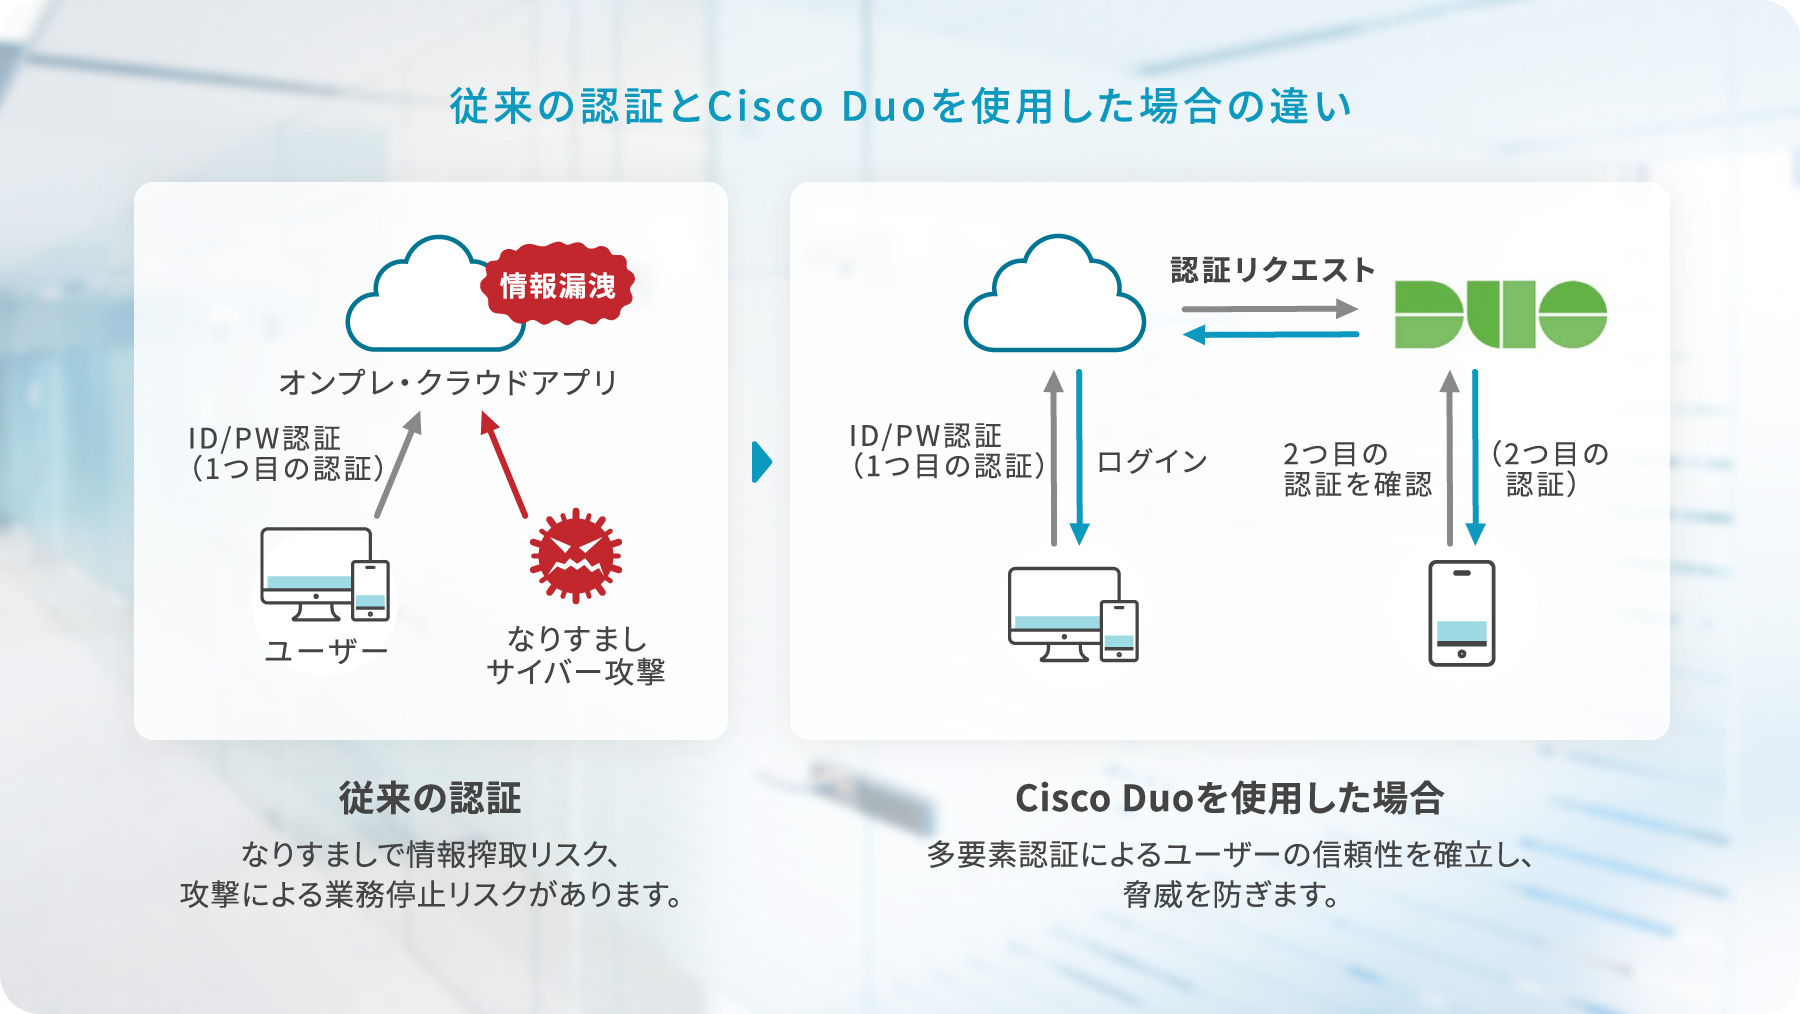 従来の認証とCisco Duoを使用した場合の違い　従来の認証：なりすましで情報搾取リスク、攻撃による業務停止リスクがあります。　Cisco Duoを使用した場合：多要素認証によるユーザーの信頼性を確立し、脅威を防ぎます。